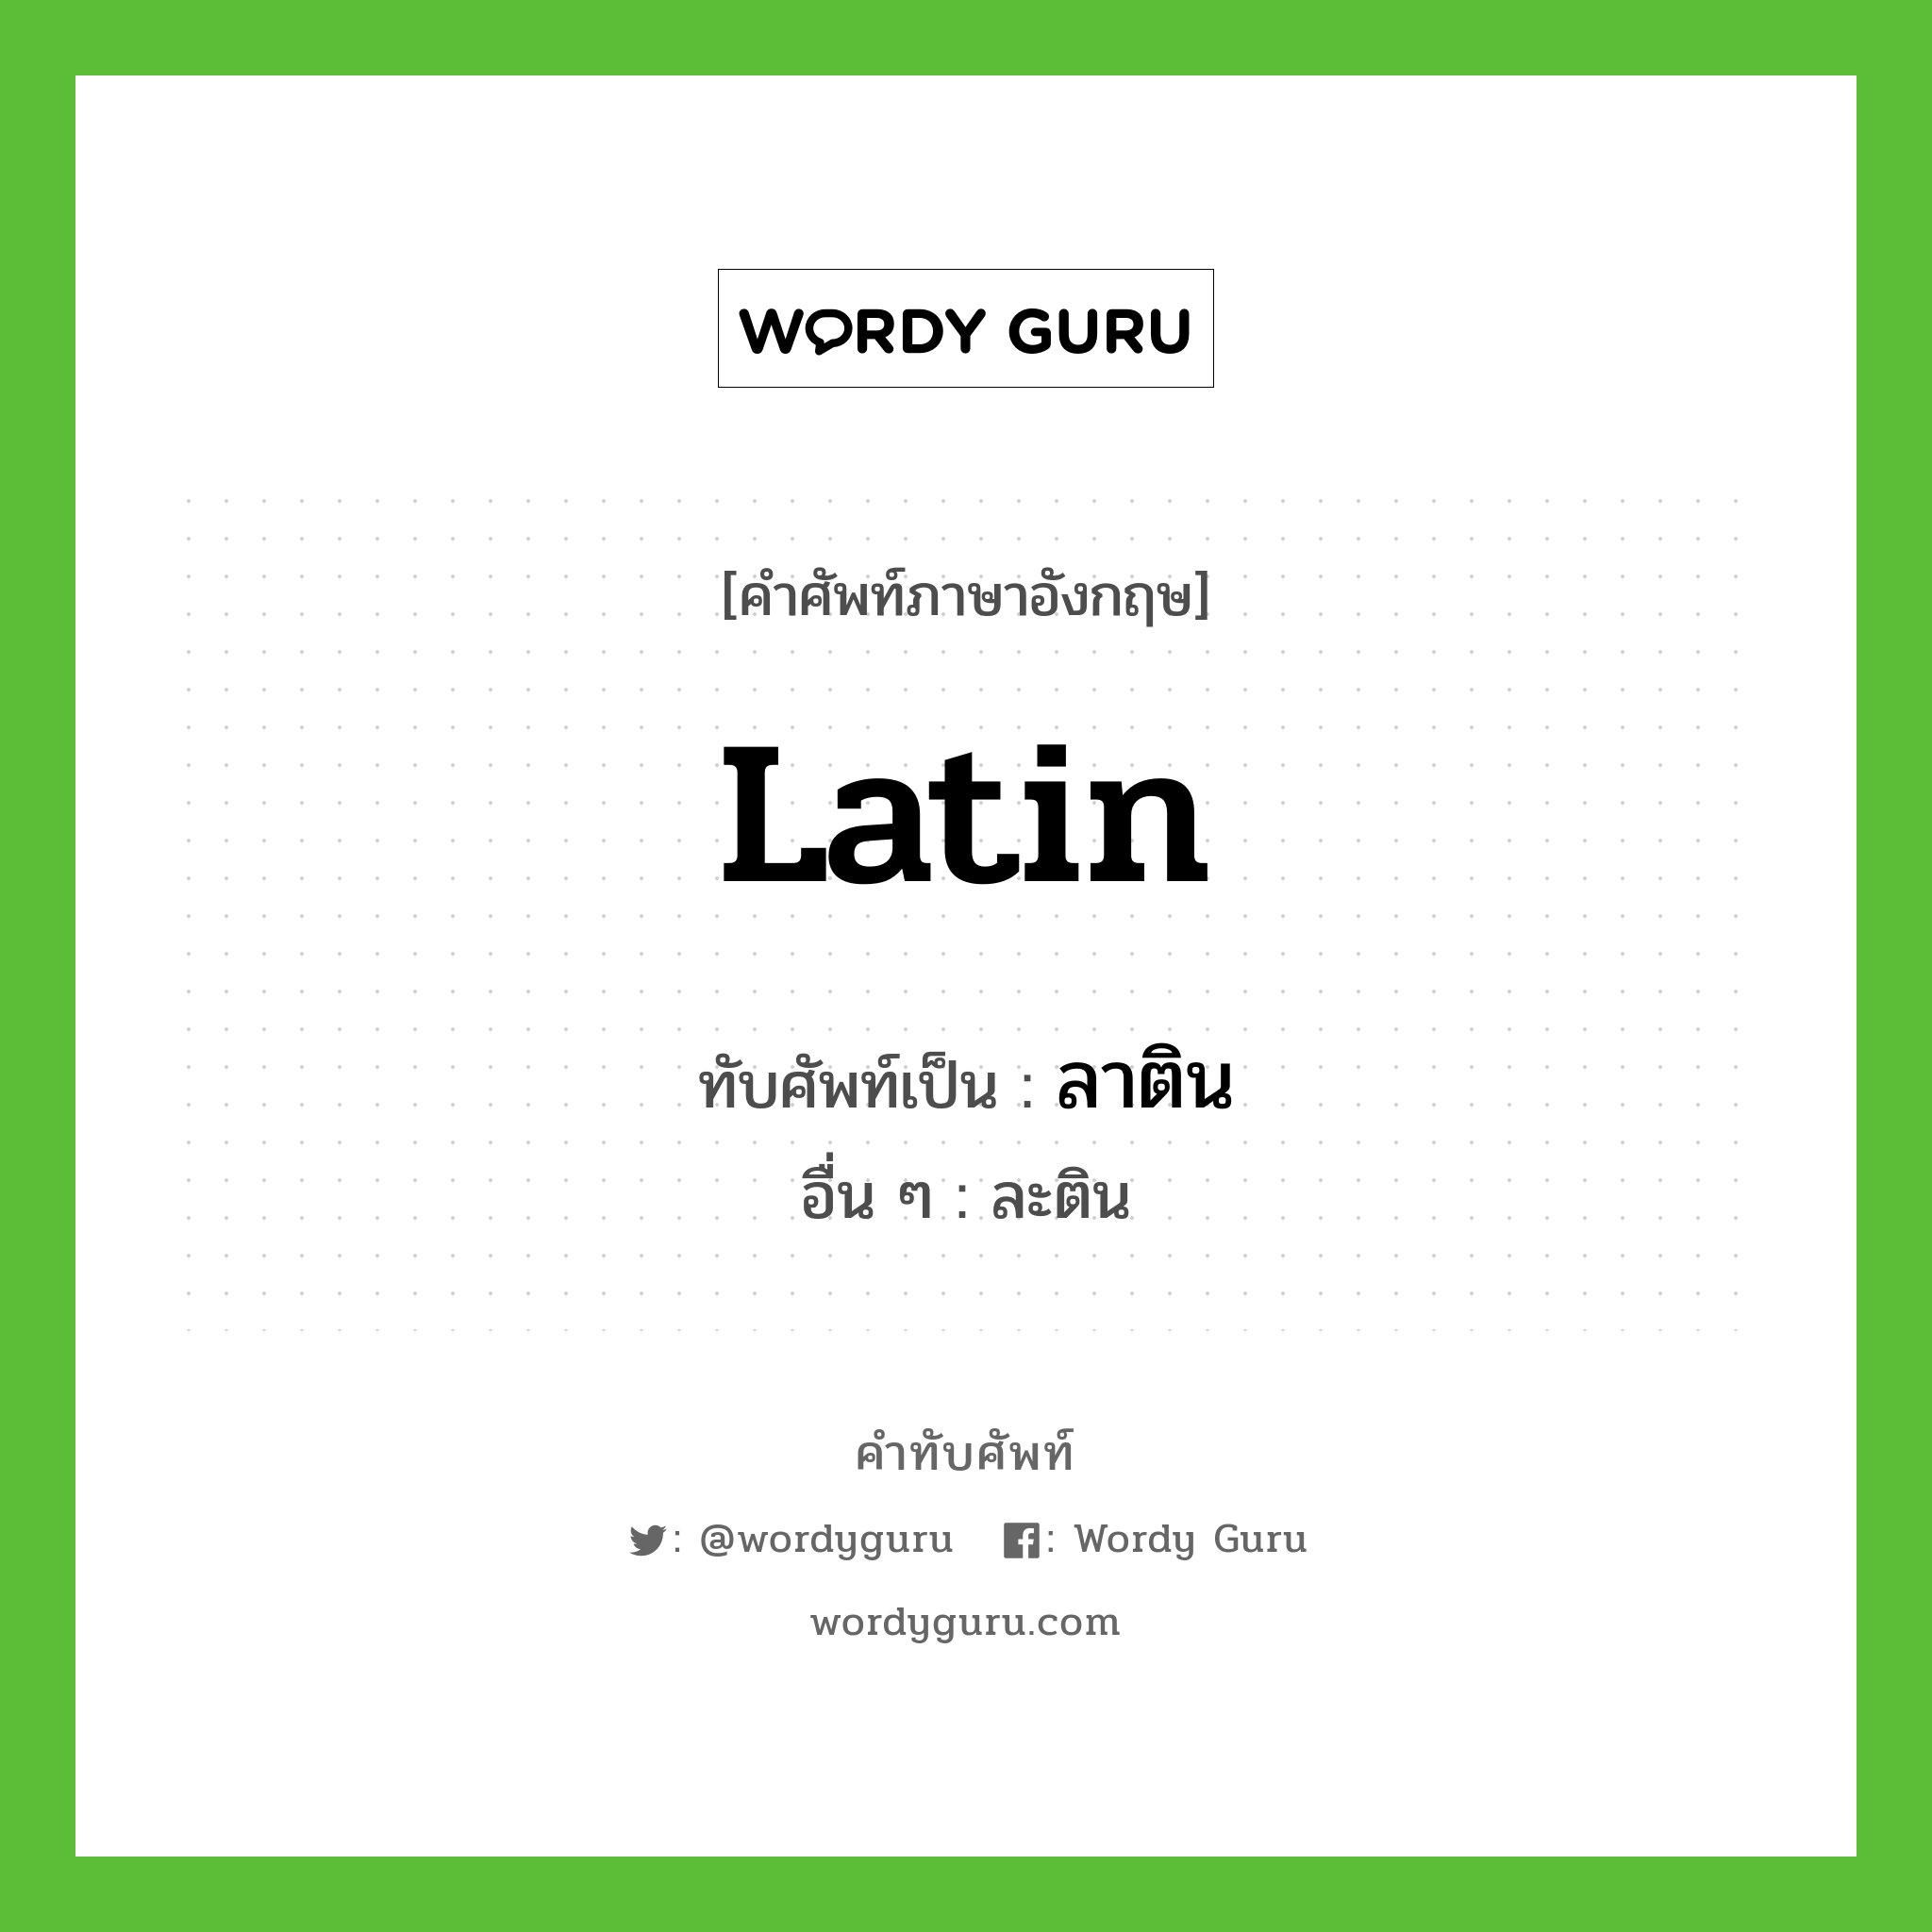 Latin เขียนเป็นคำไทยว่าอะไร?, คำศัพท์ภาษาอังกฤษ Latin ทับศัพท์เป็น ลาติน อื่น ๆ ละติน